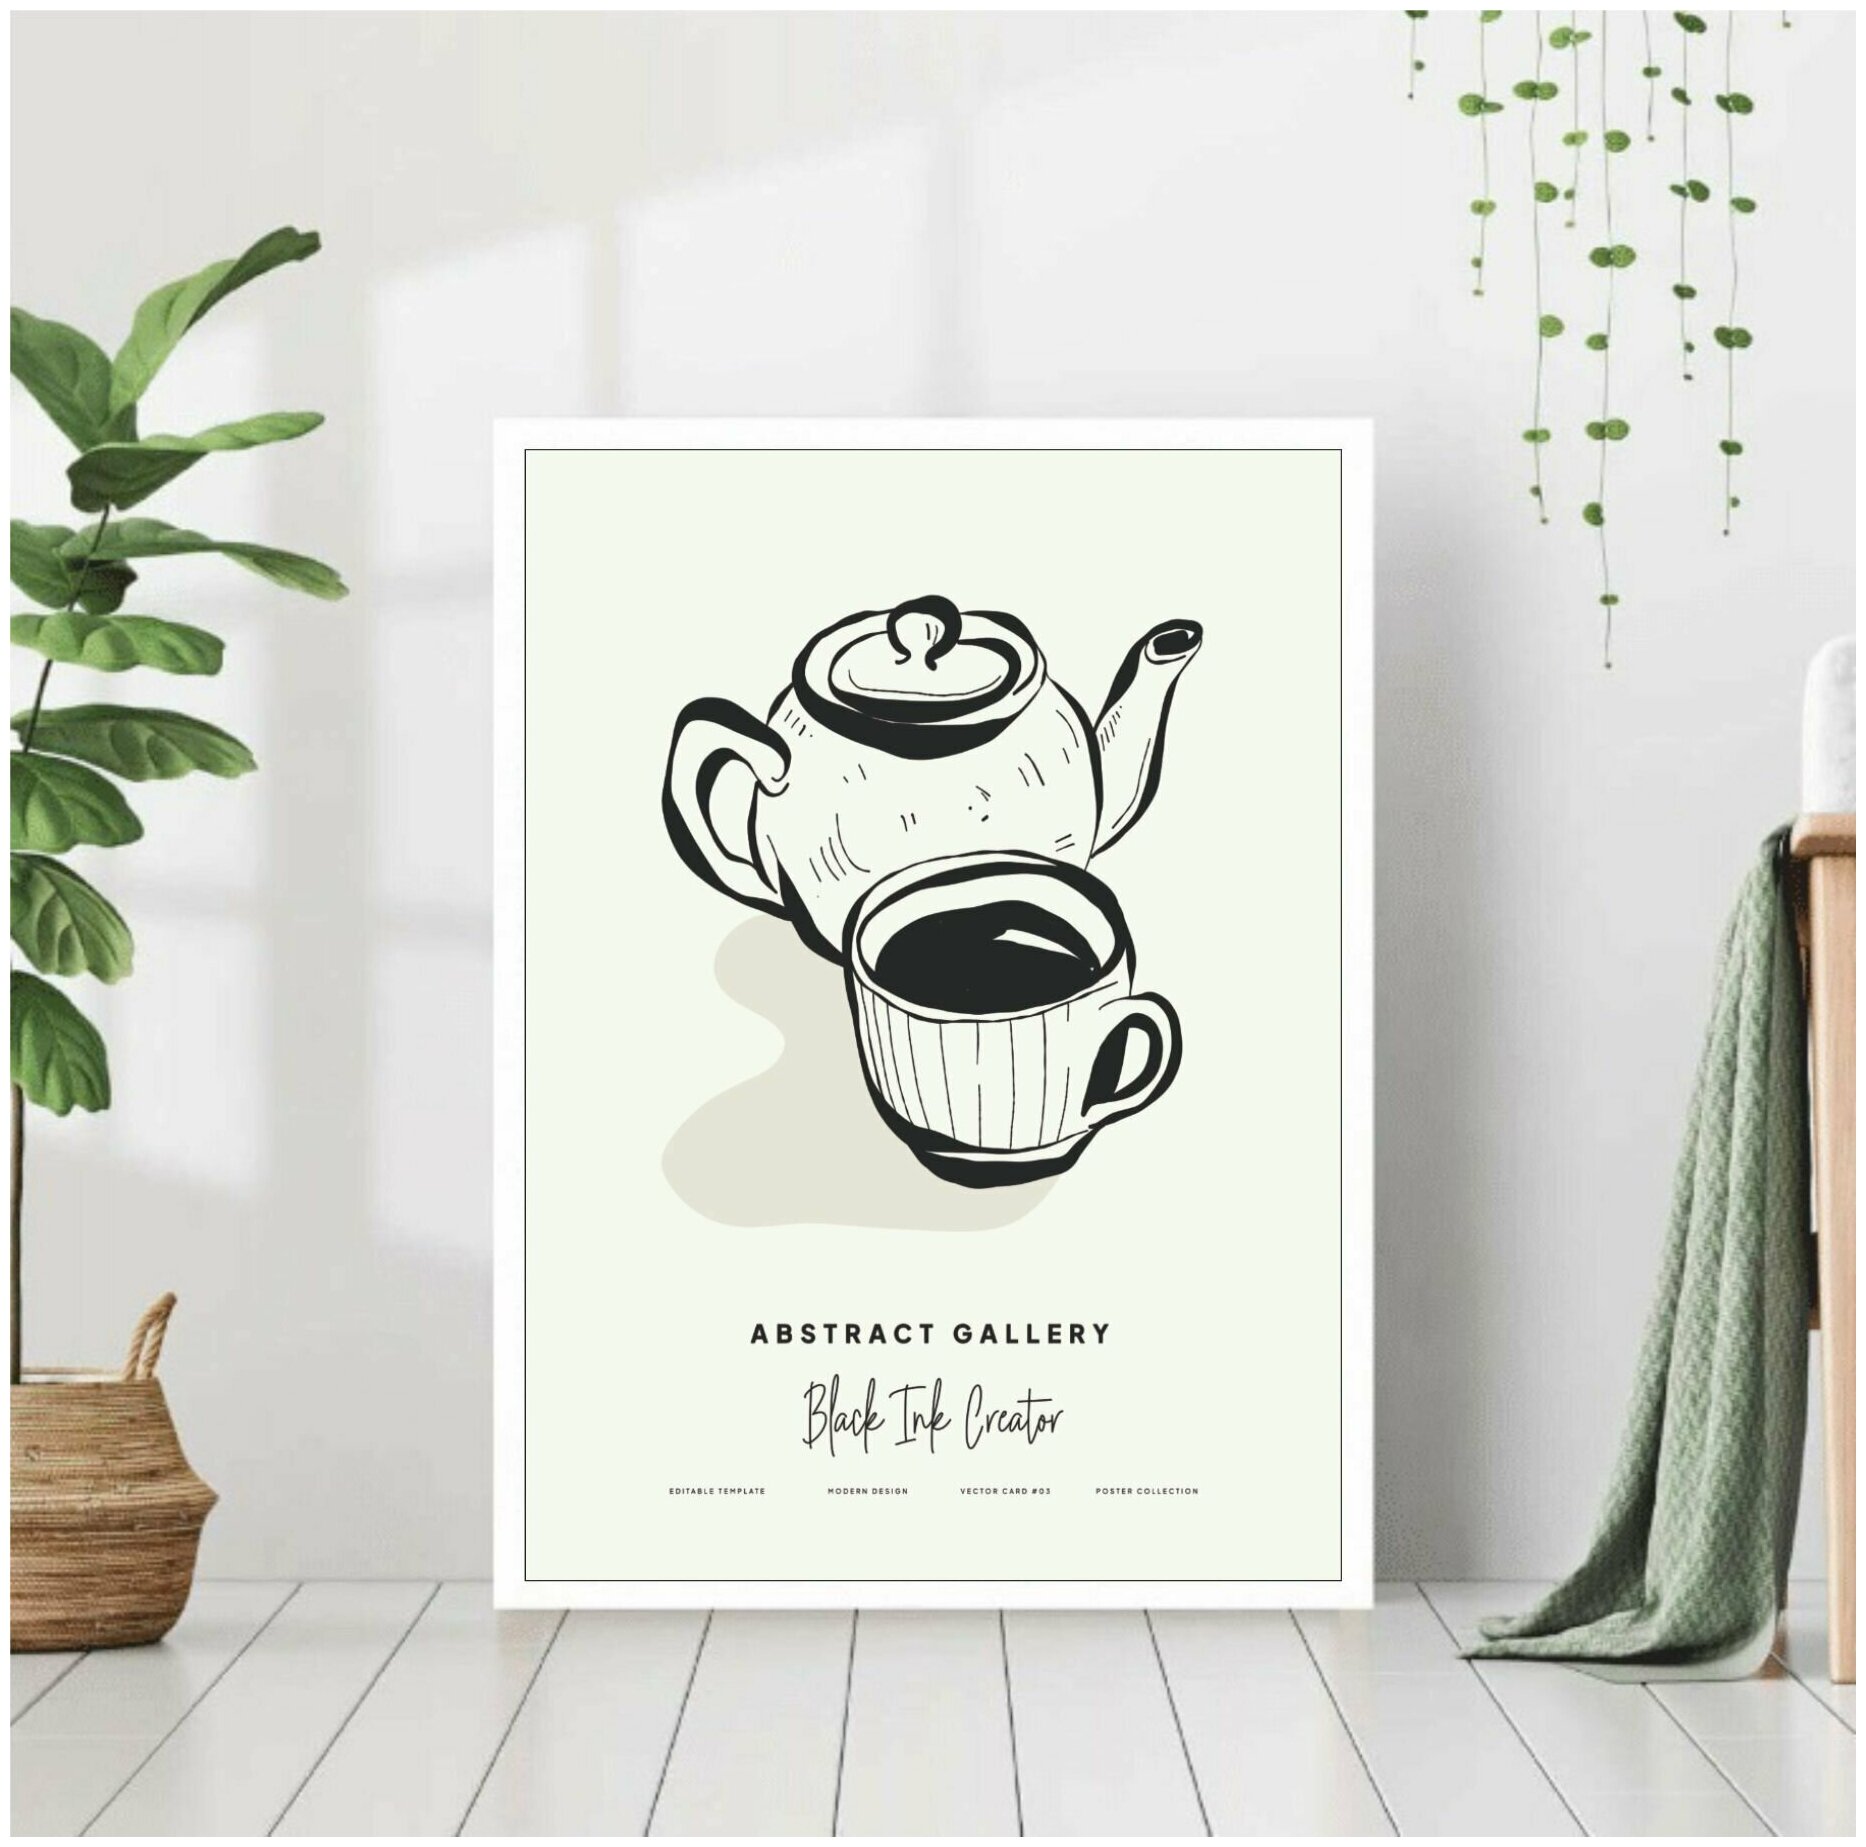 Постер "Натюрморт чашка чая" 40*50 в белой раме / Картина / Постеры для интерьера / Плакаты / Рамка